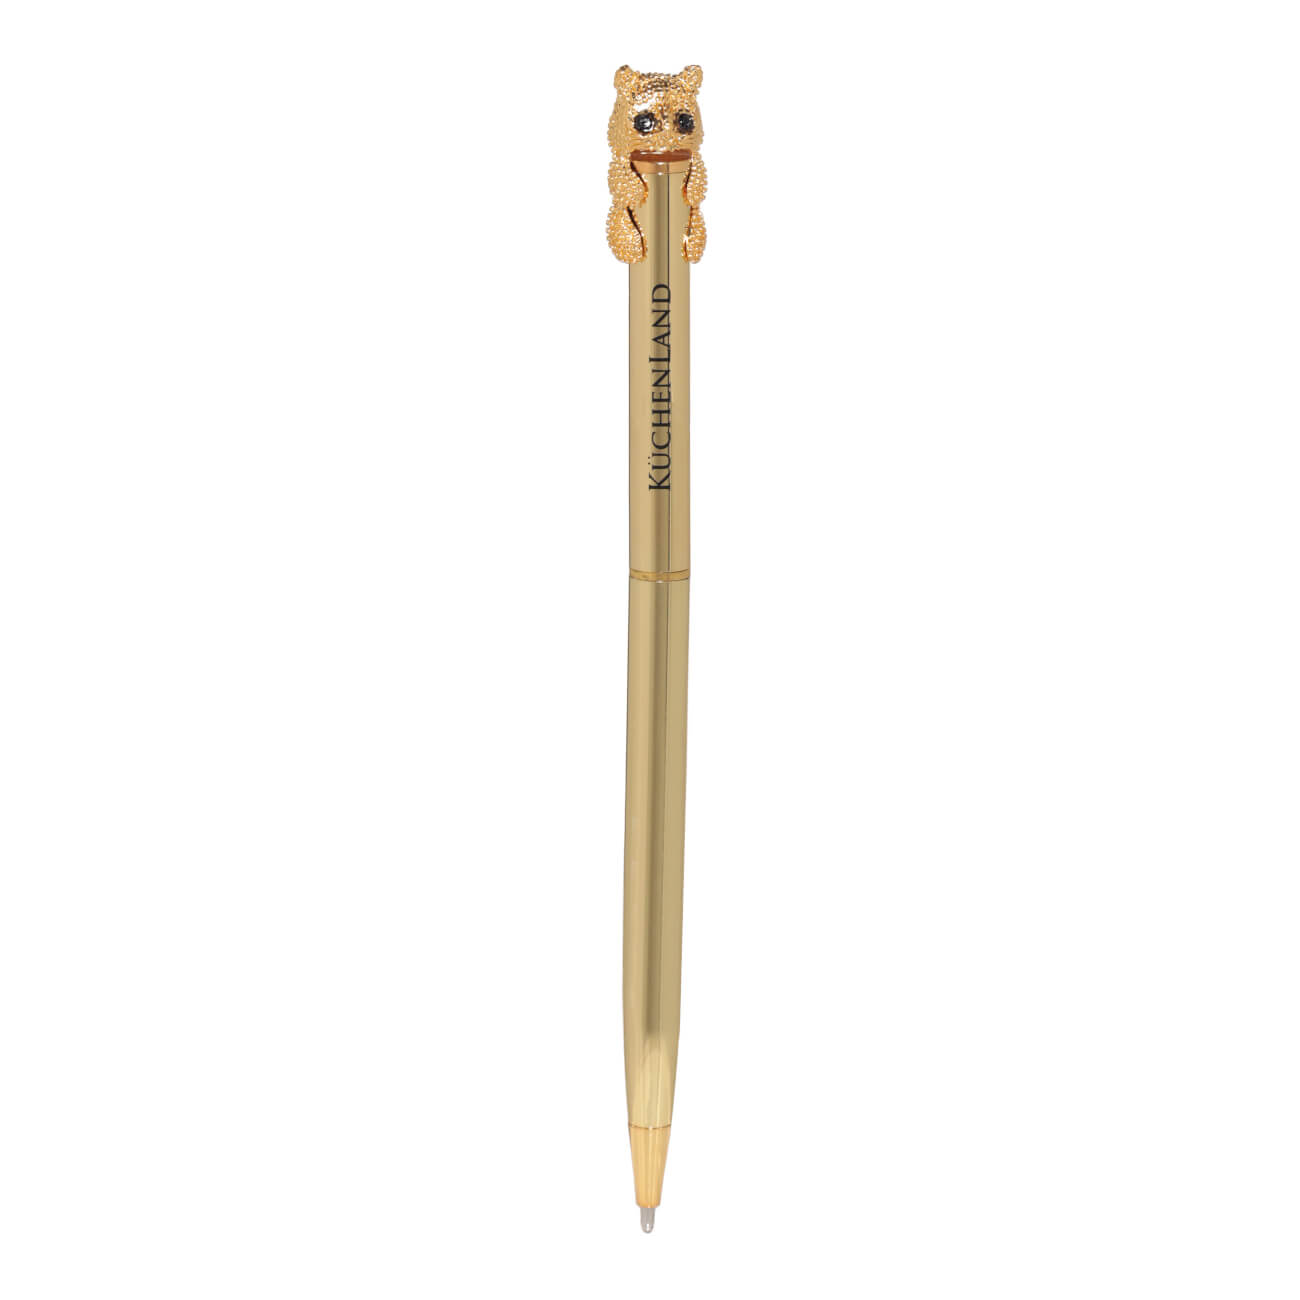 Ручка шариковая, 14 см, с фигуркой, золотистая, Кот, Draw figure ручка шариковая waterman expert   gt m